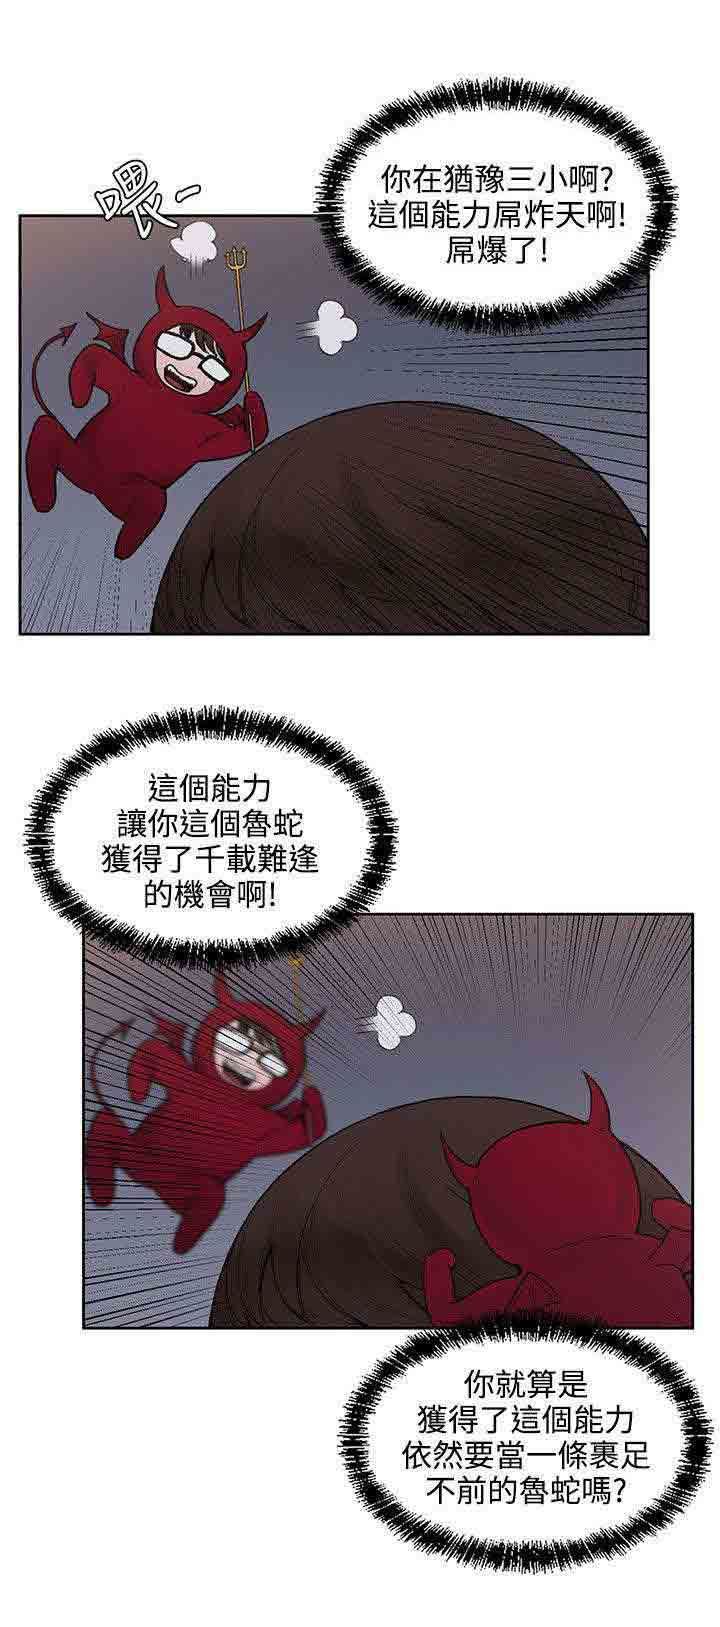 韩国污漫画 甜蜜的香氣 第29话犹豫 9